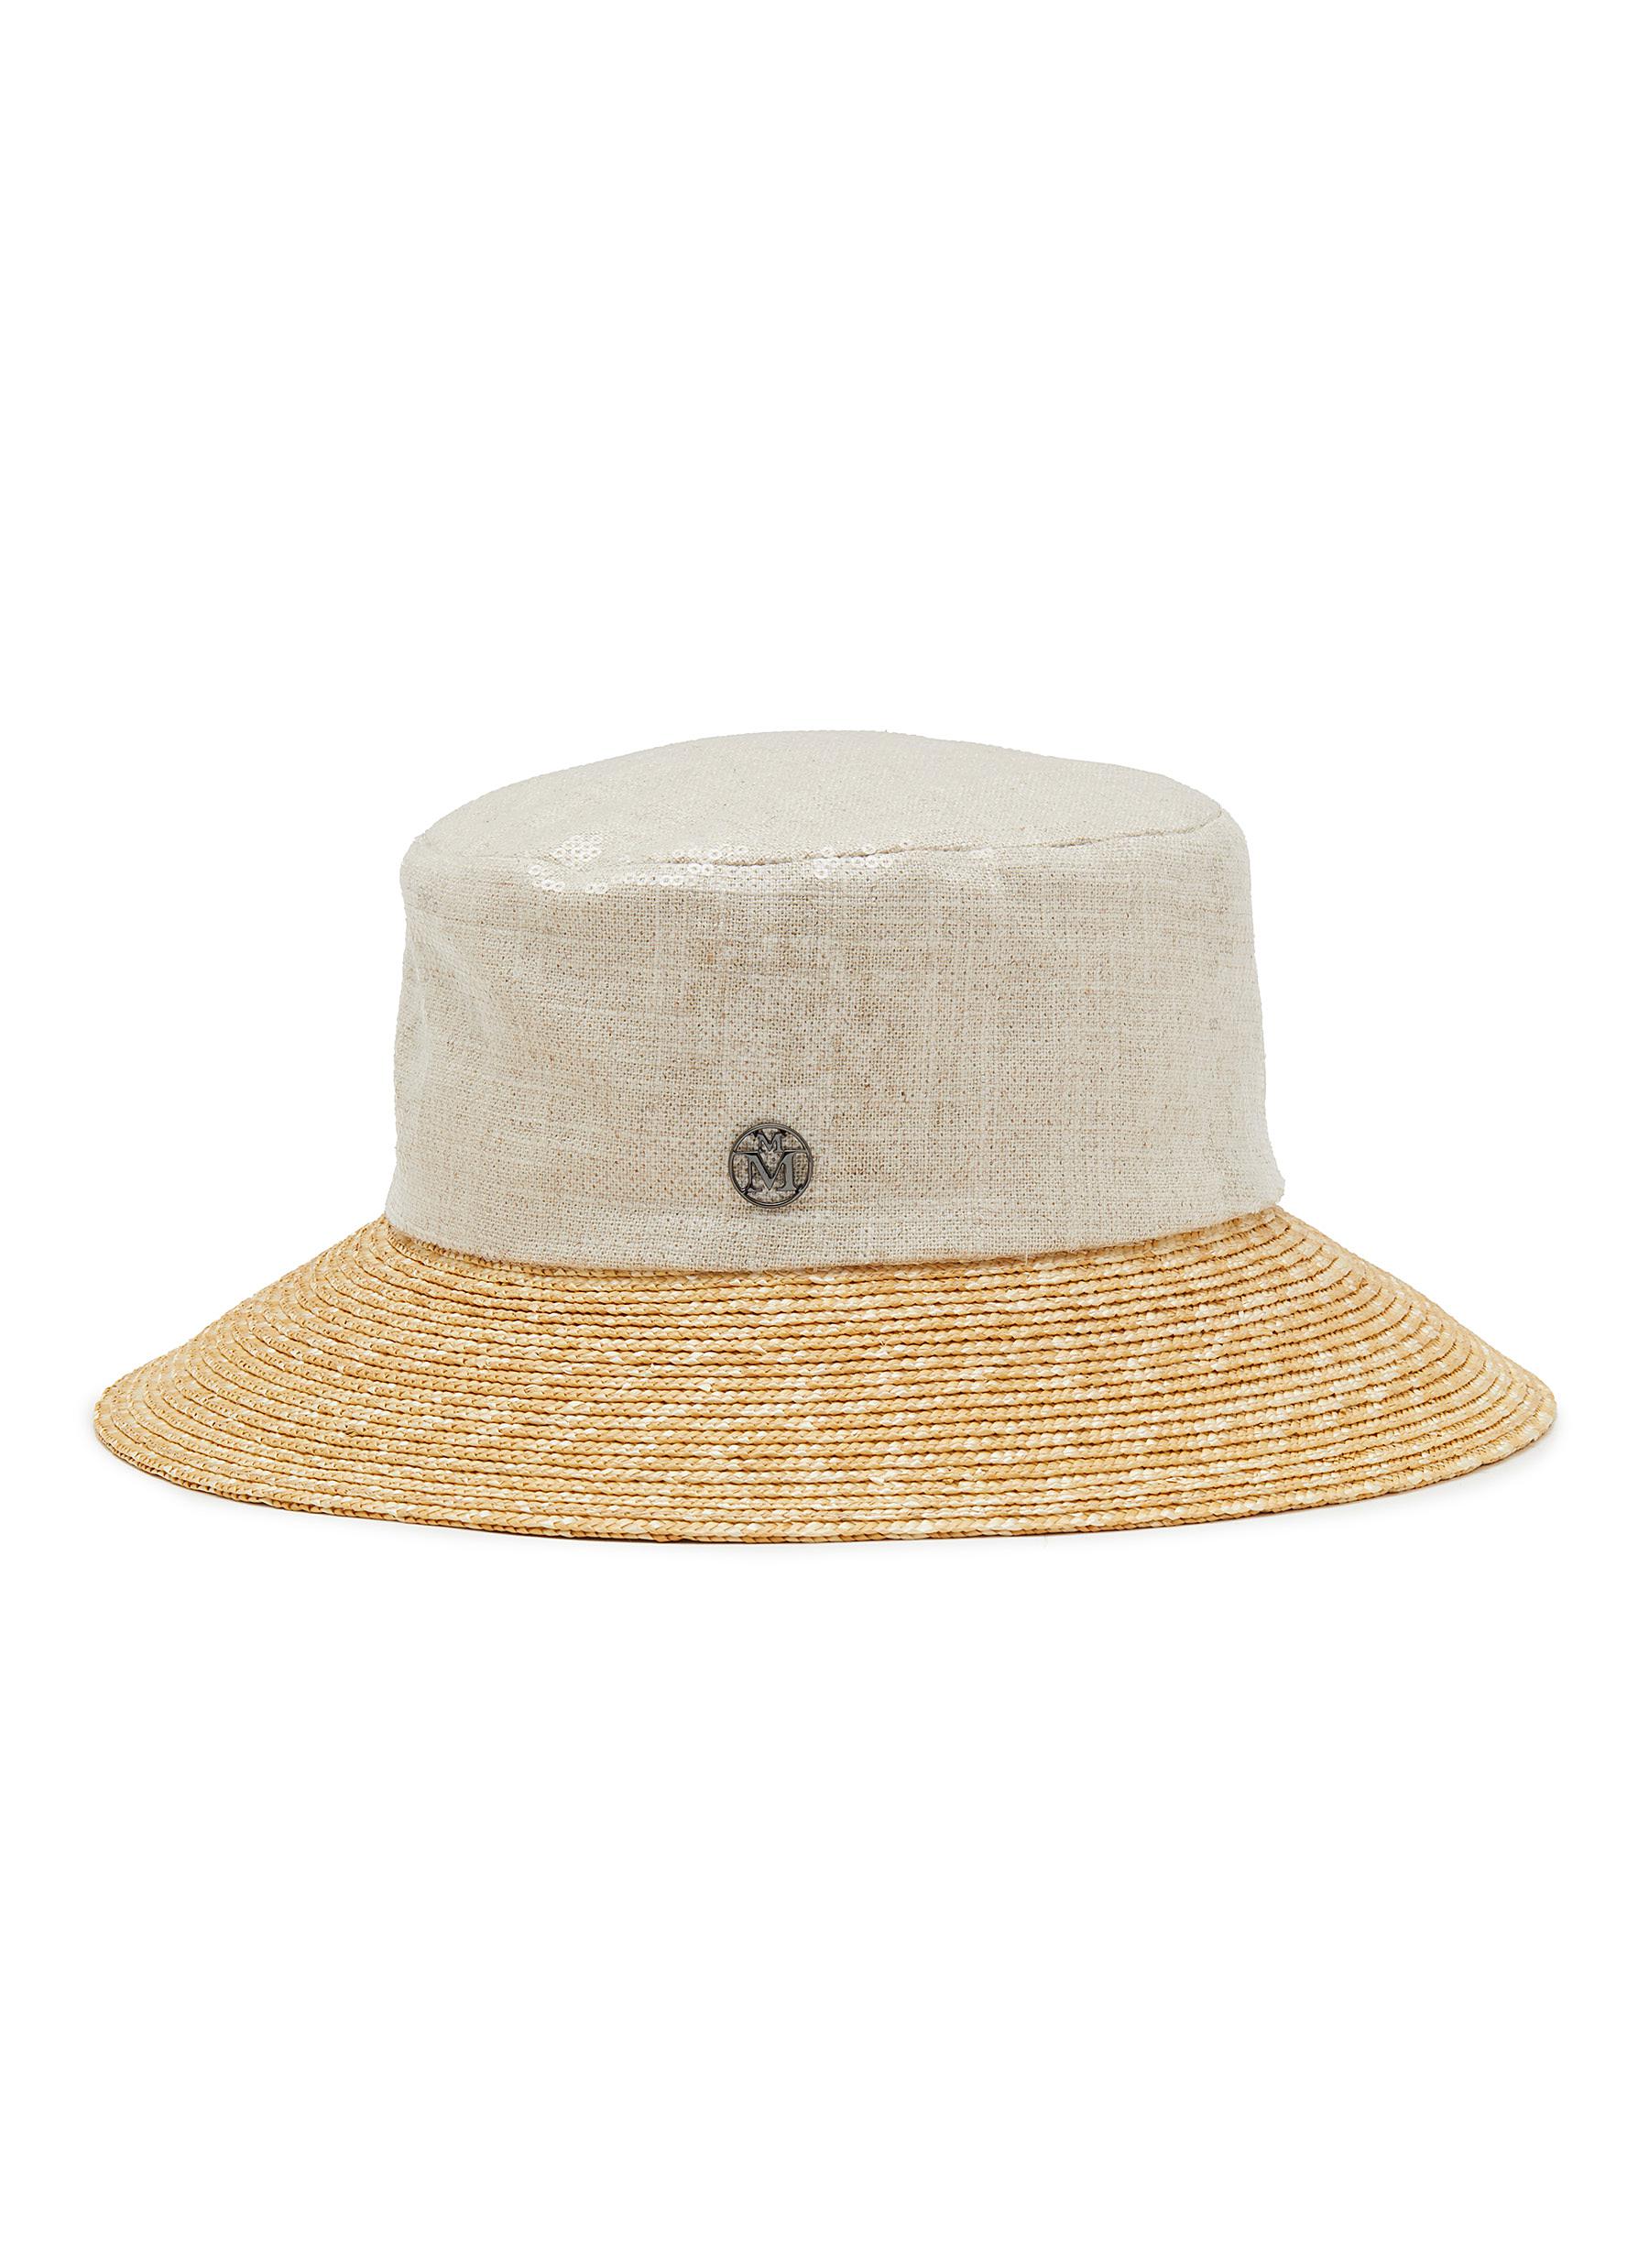 Maison Michel Souna veil bucket-hat - White